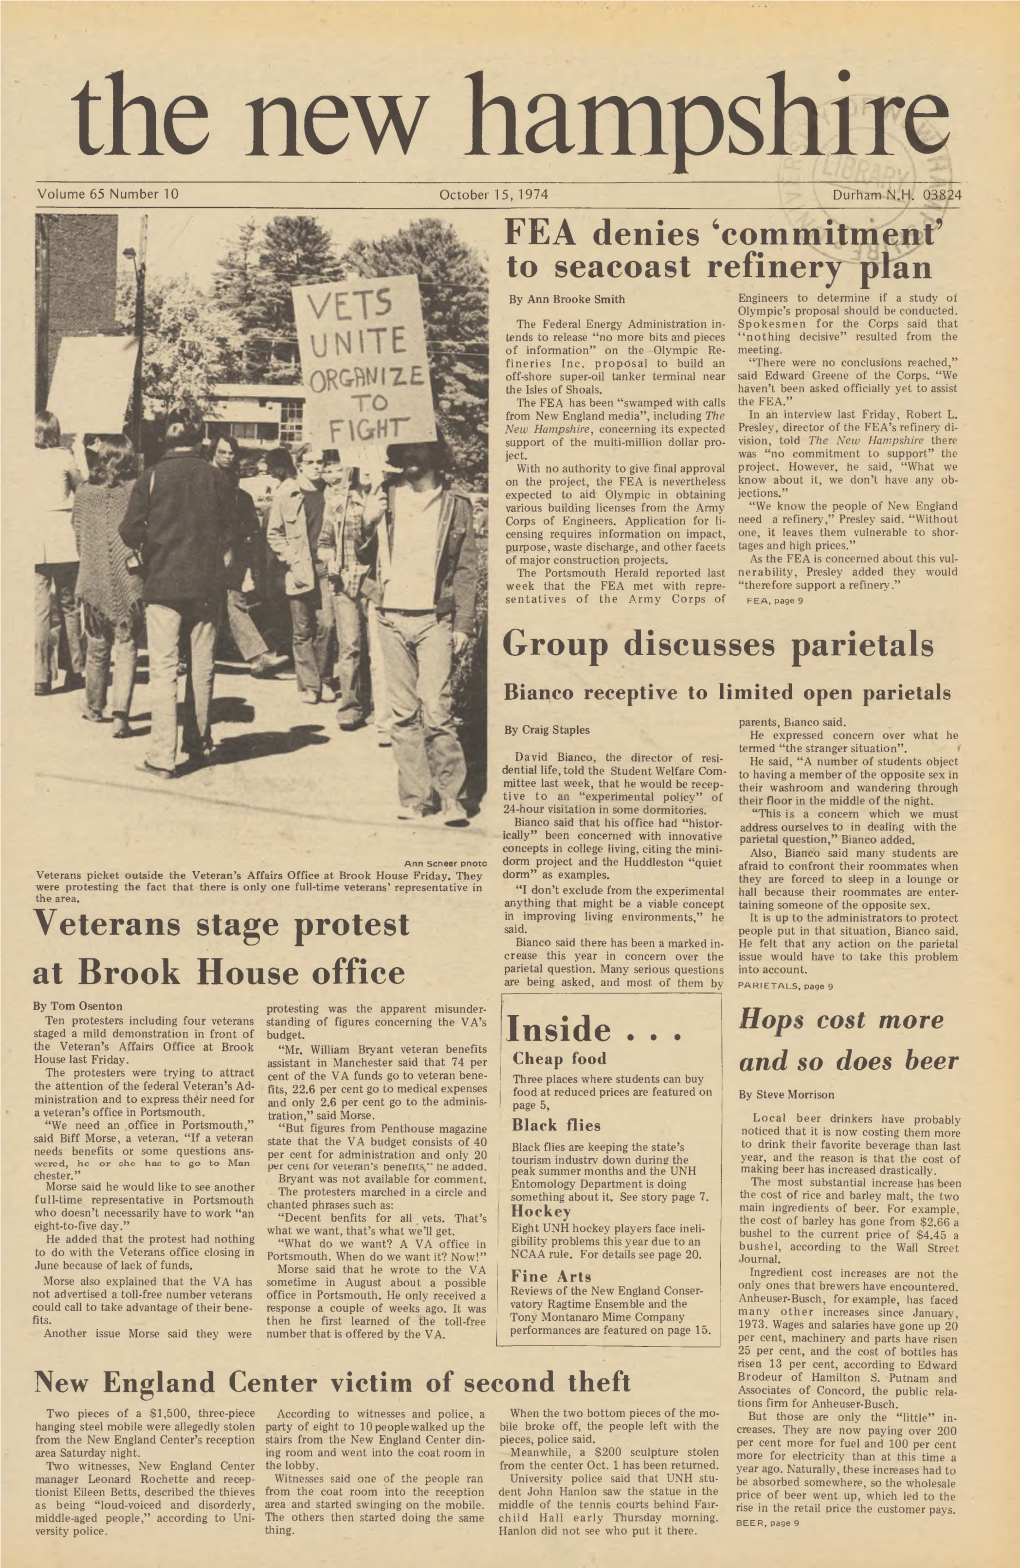 The New Hampshire, Vol. 65, No. 10 (Oct. 15, 1974)